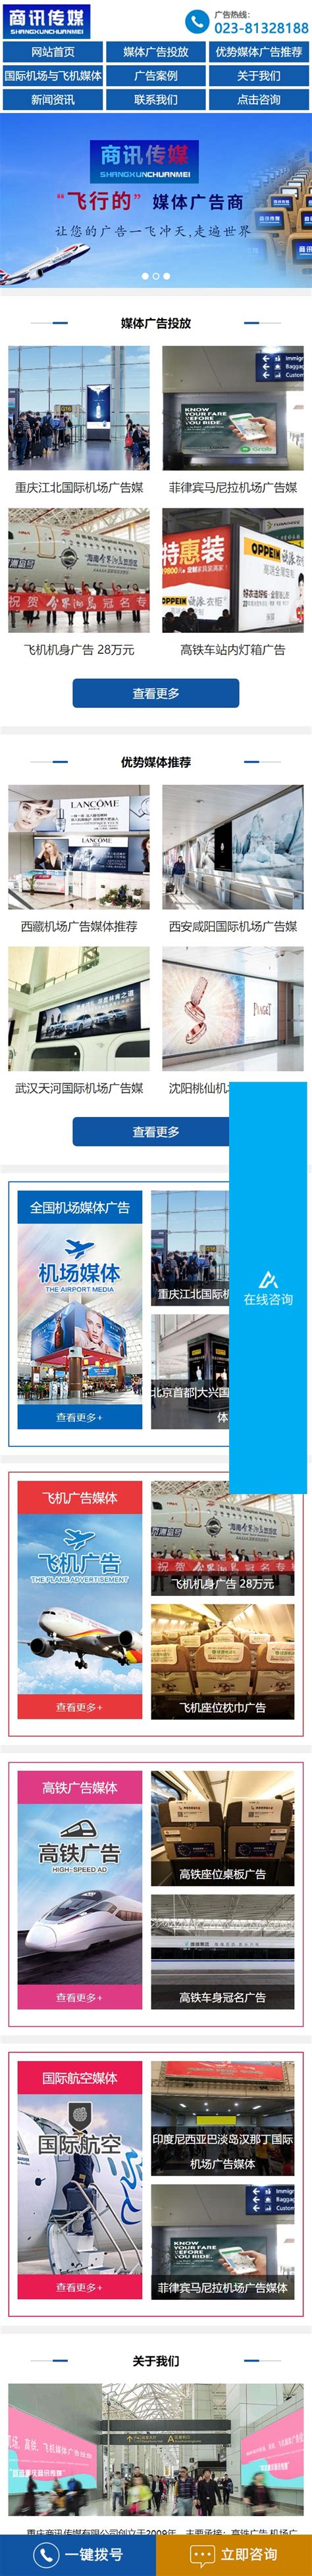 重庆手机网站建设,重庆手机网站制作